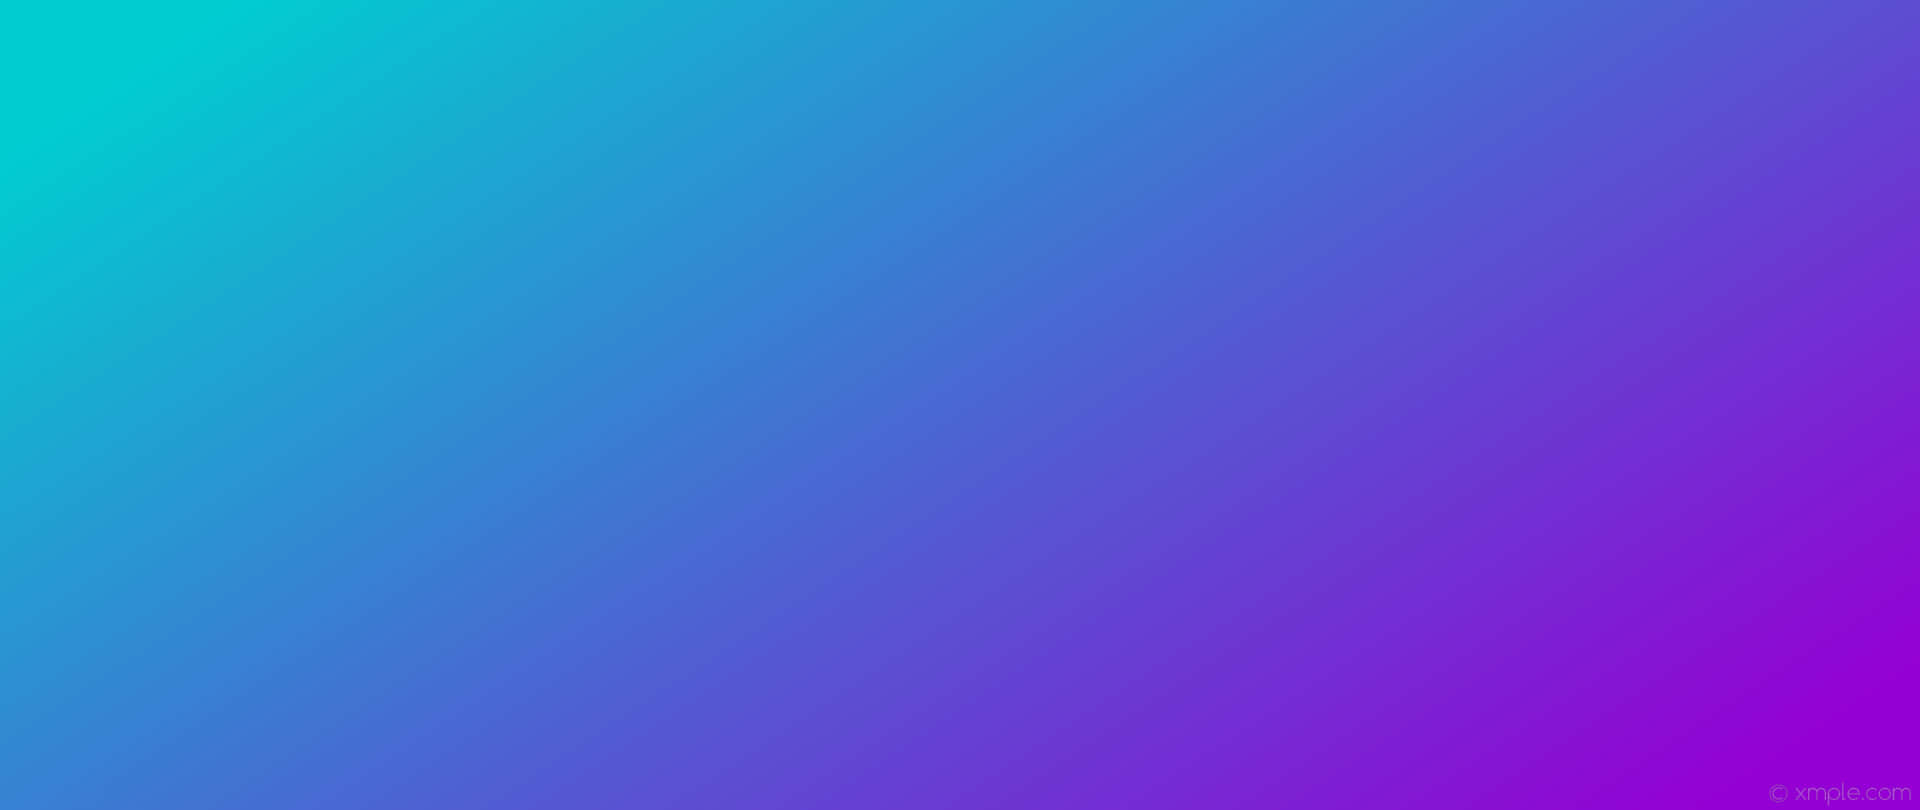 Añadeun Toque De Color A Tu Hogar Con Un Diseño Degradado En Tonos Violeta Y Azul. Fondo de pantalla